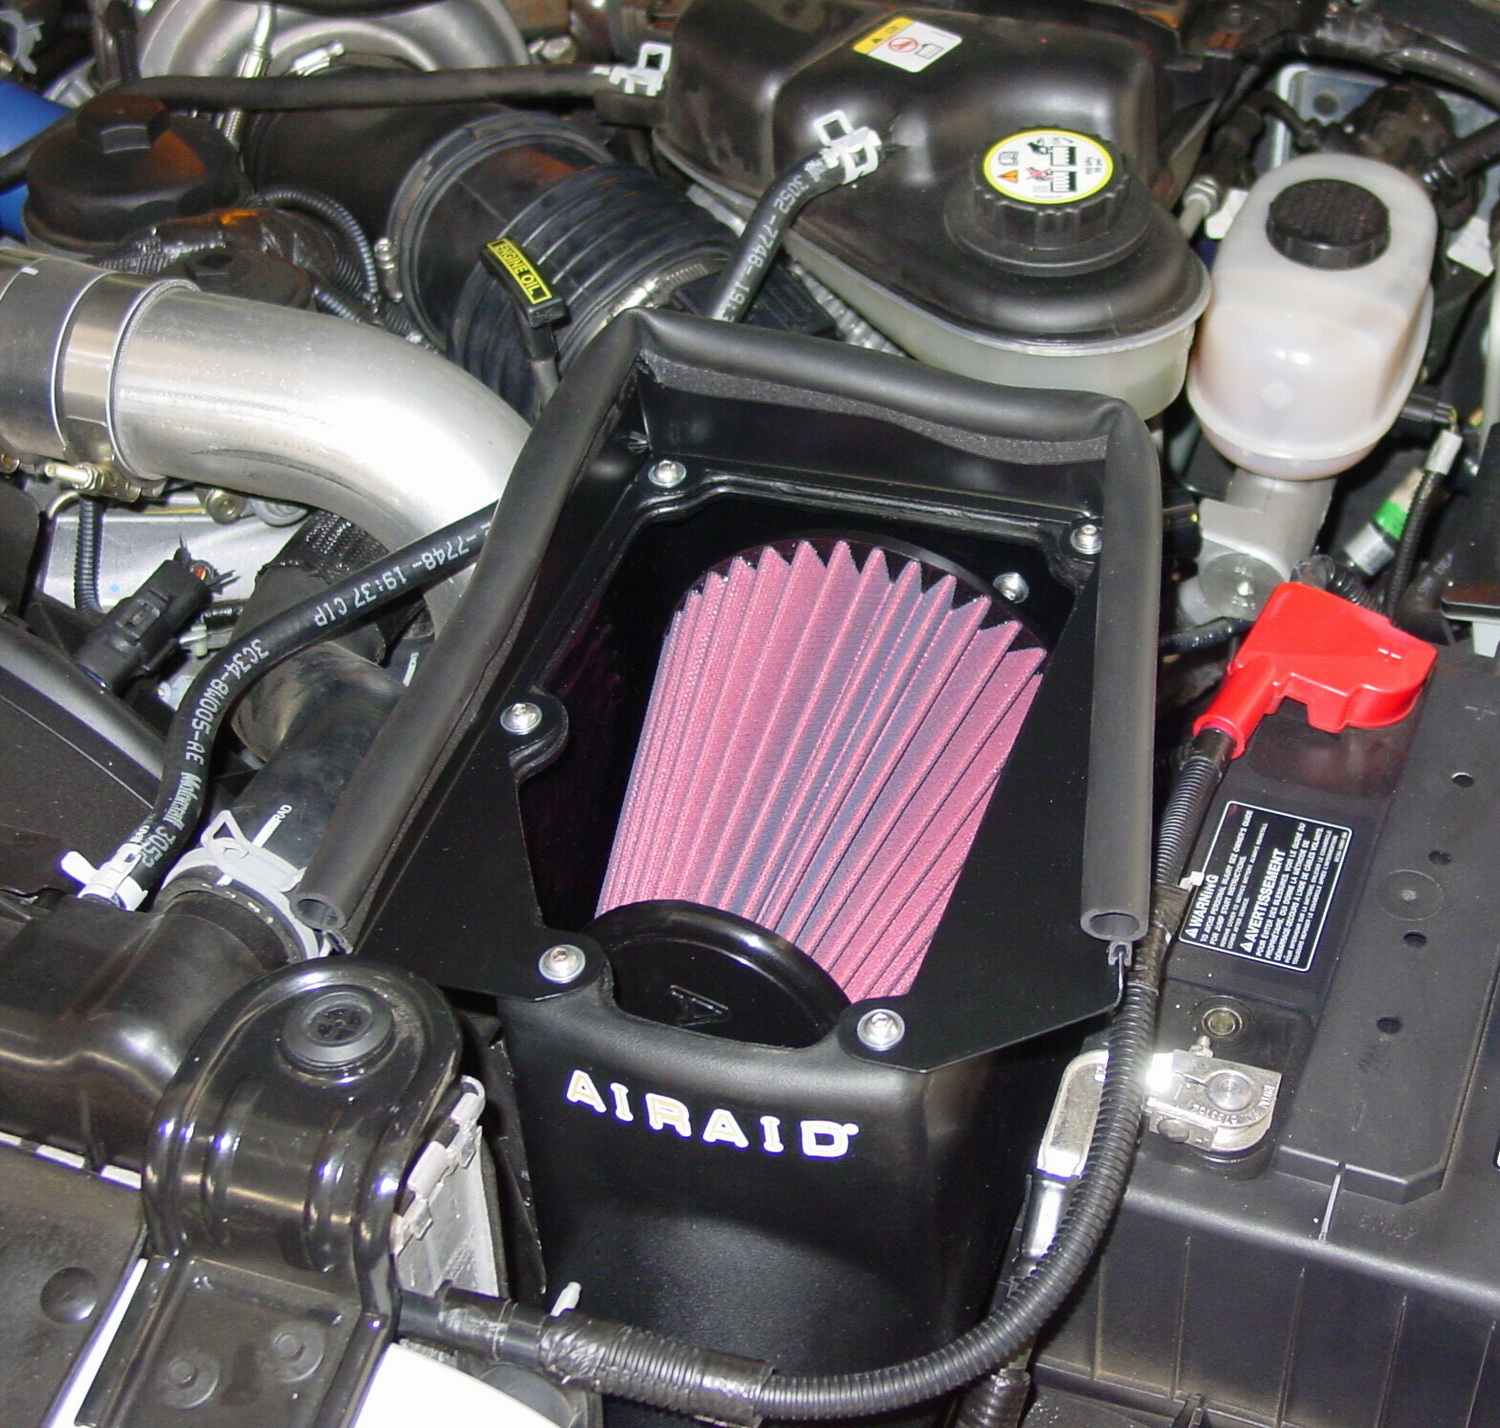 Airaid Airaid 251-305 AIRAID MXP Series Cold Air Box Intake System Fits 14-15 Camaro